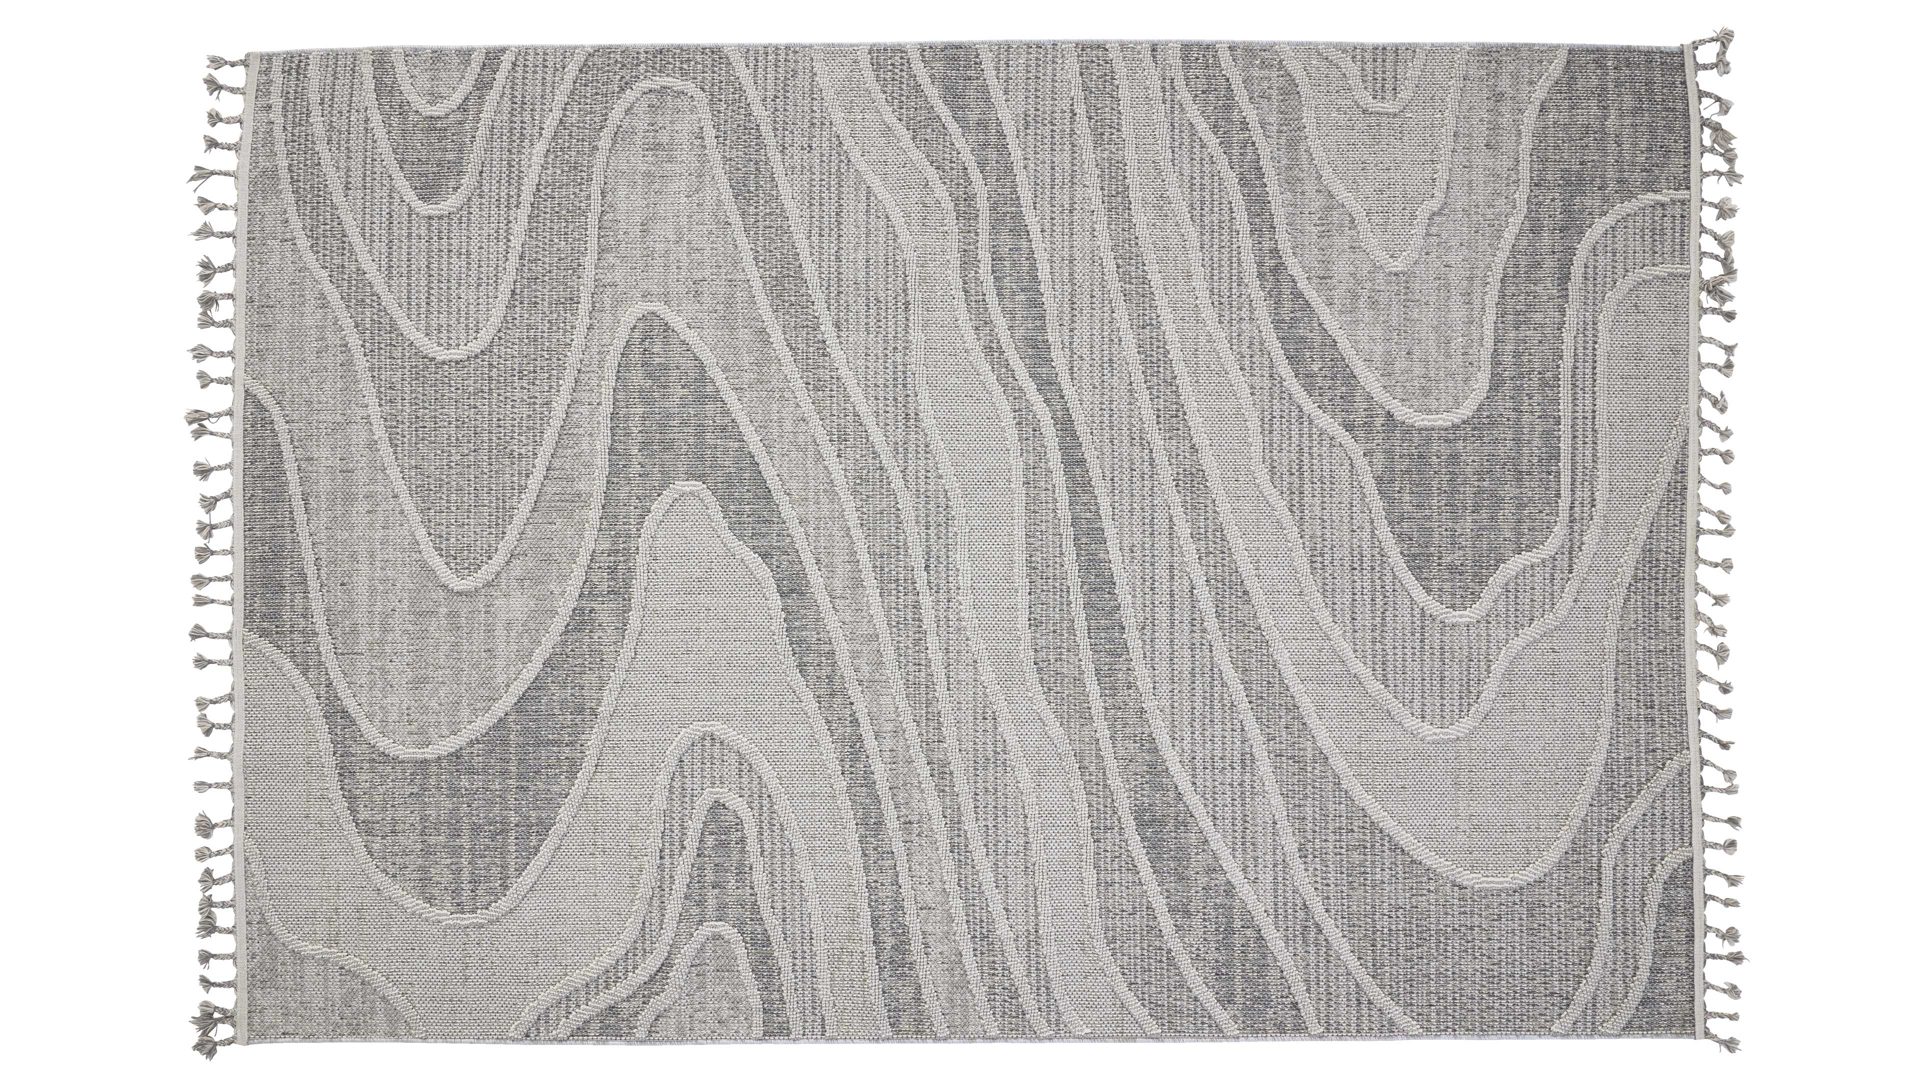 Outdoor-Teppich Interliving aus Kunstfaser in Grau Interliving Teppich Serie G-8020 - Outdoor-Teppich graues Linienmuster - ca. 200 x 290 cm